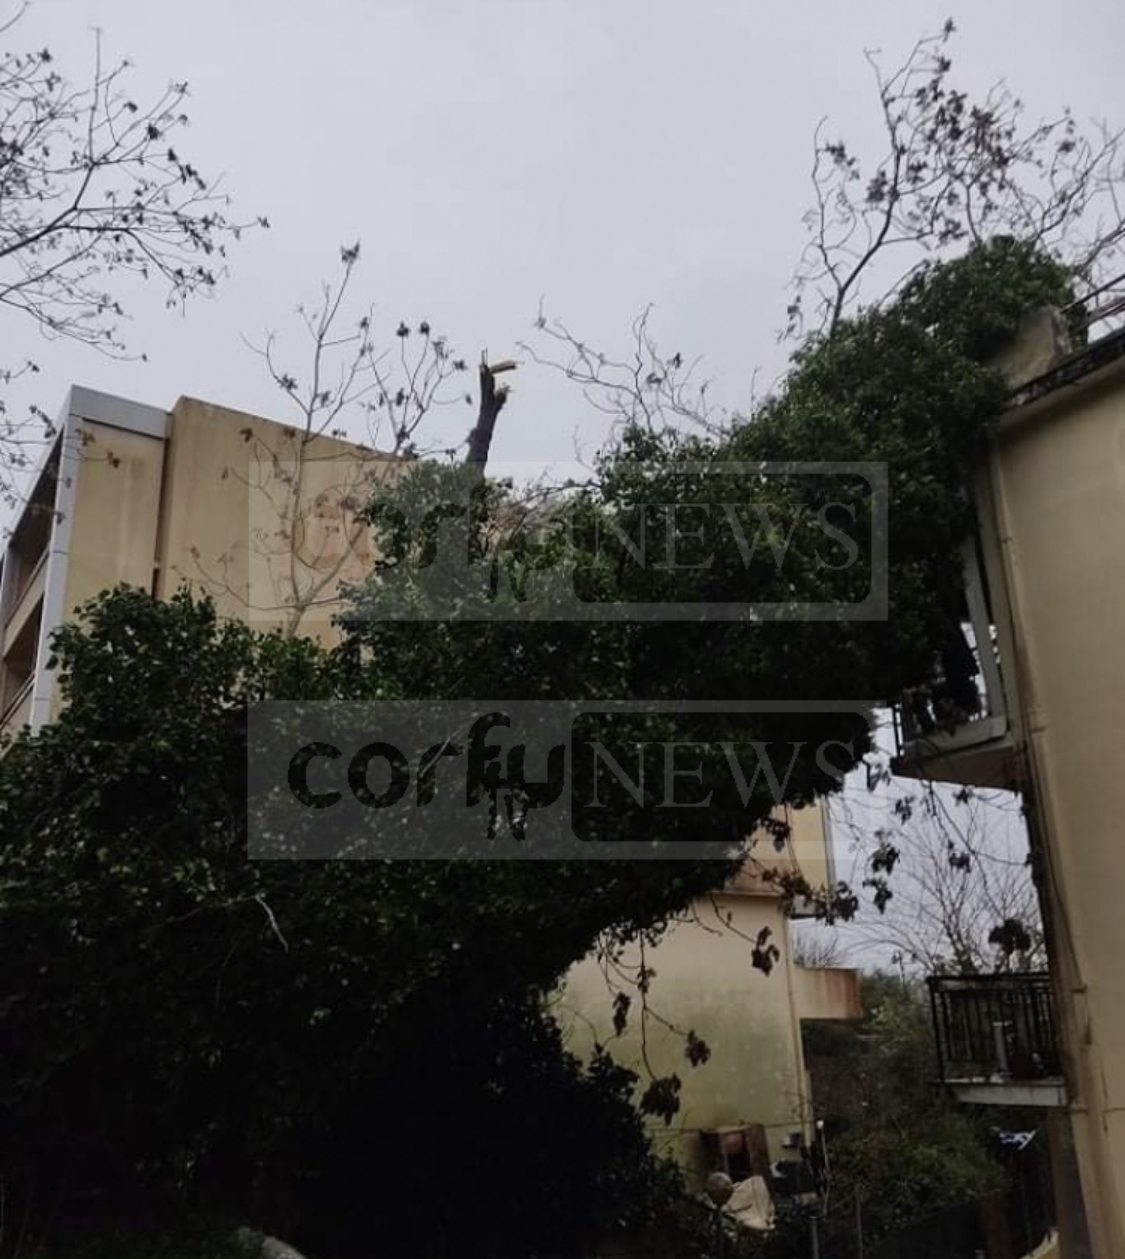 Καιρός: Σφοδρή κακοκαιρία «σφυροκοπά» την Κέρκυρα - Δέντρο έπεσε σε πολυκατοικία